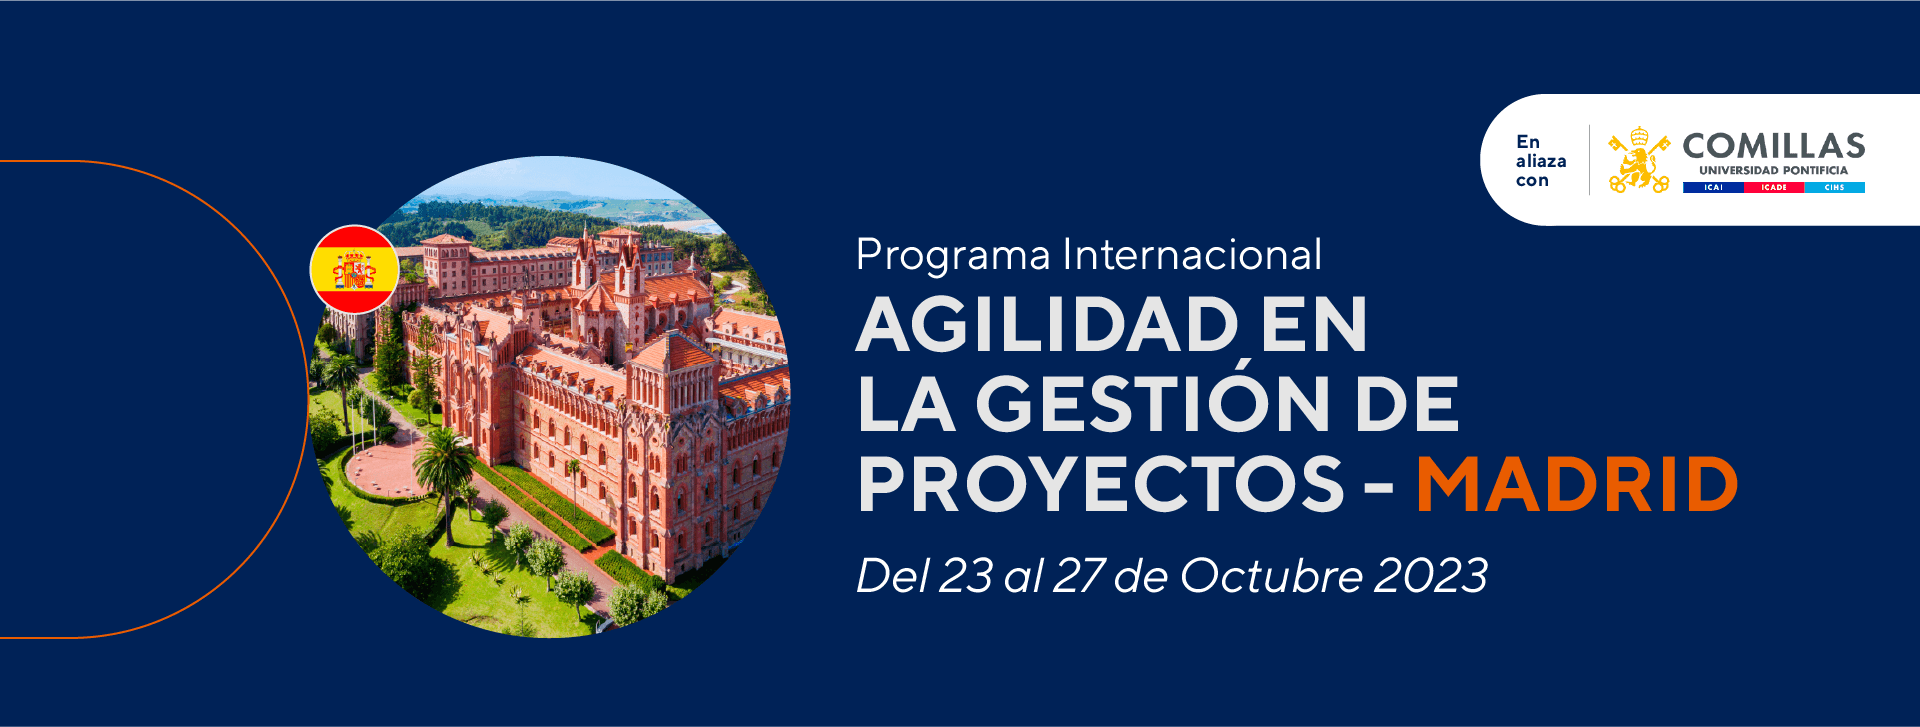 Programa Internacional Agilidad en la Gestión de Proyectos - Madrid